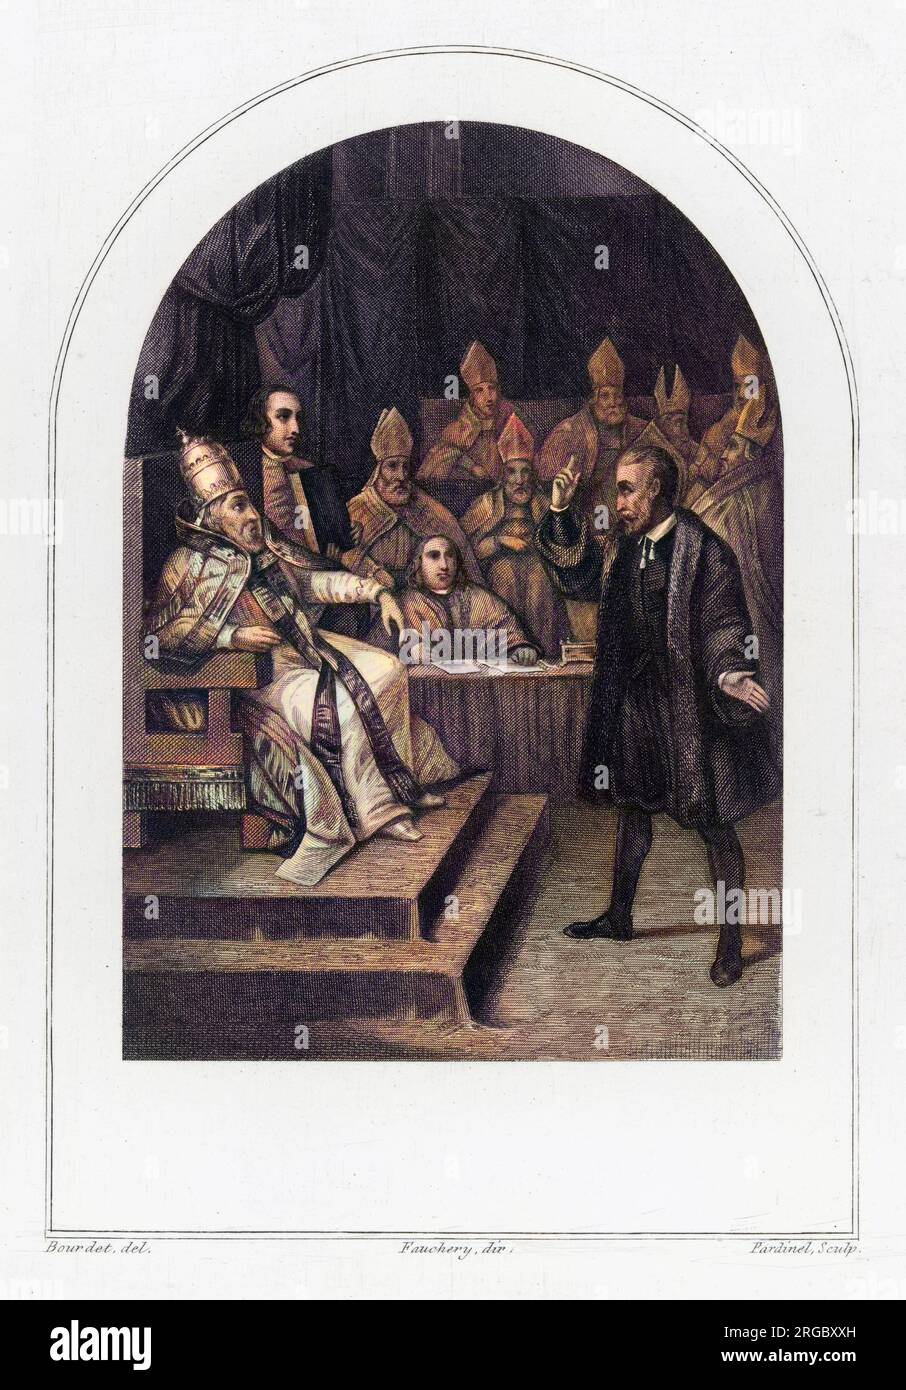 Matematico, fisico e astronomo italiano, Galileo Galilei (1564-1642), davanti a Papa Urbano VIII quando è in prova per eresia Foto Stock